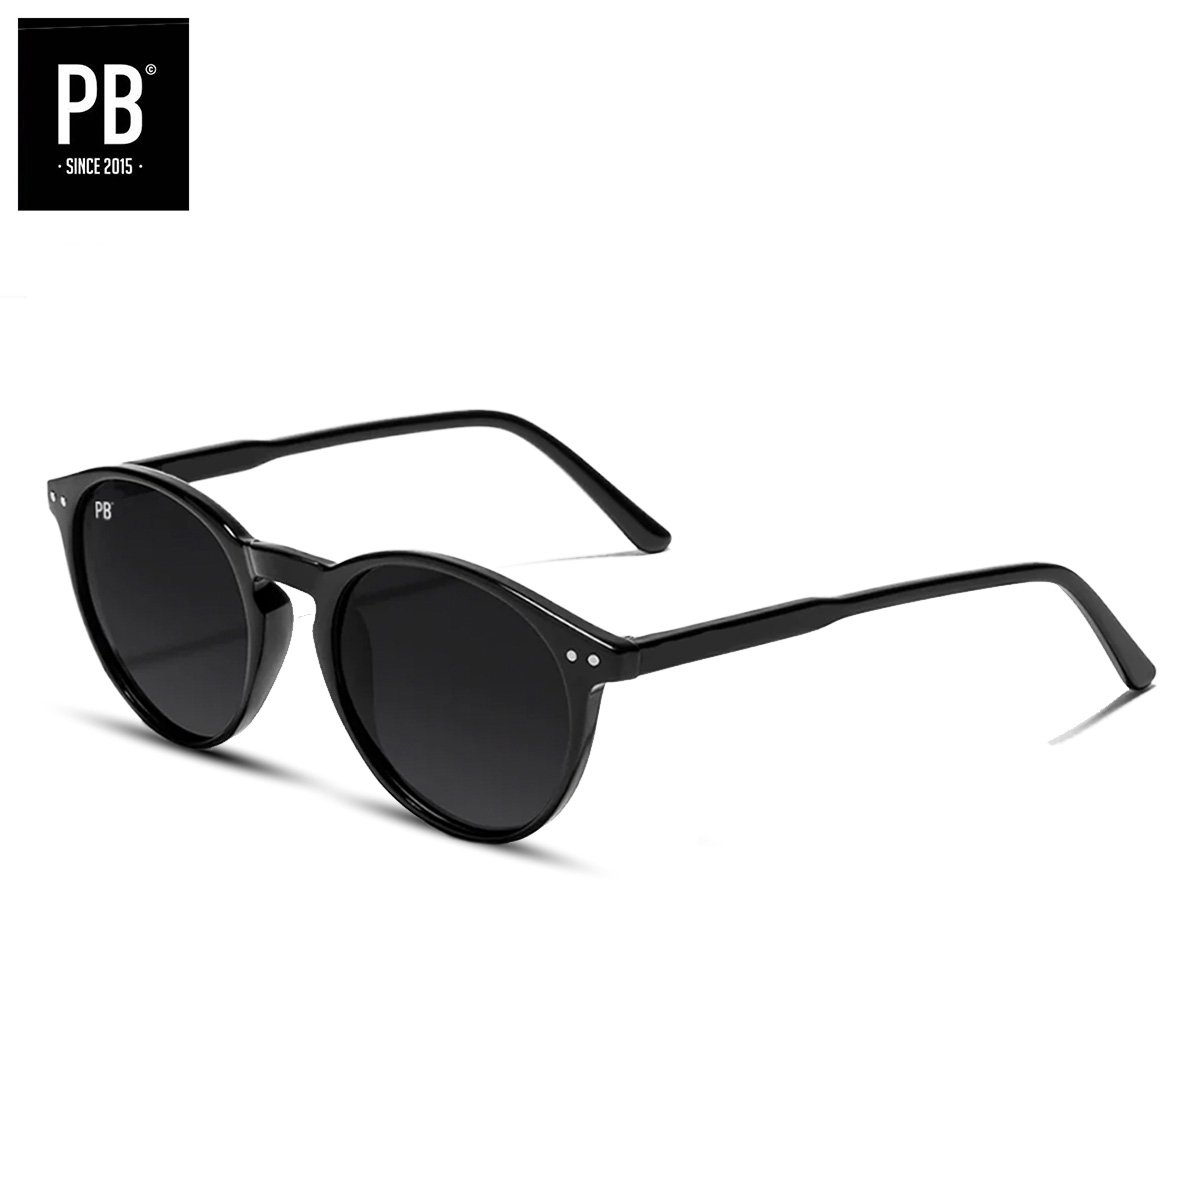 PB Sunglasses - Boston Black. - Zonnebril heren en dames gepolariseerd - Zwart design - Ronde stijl